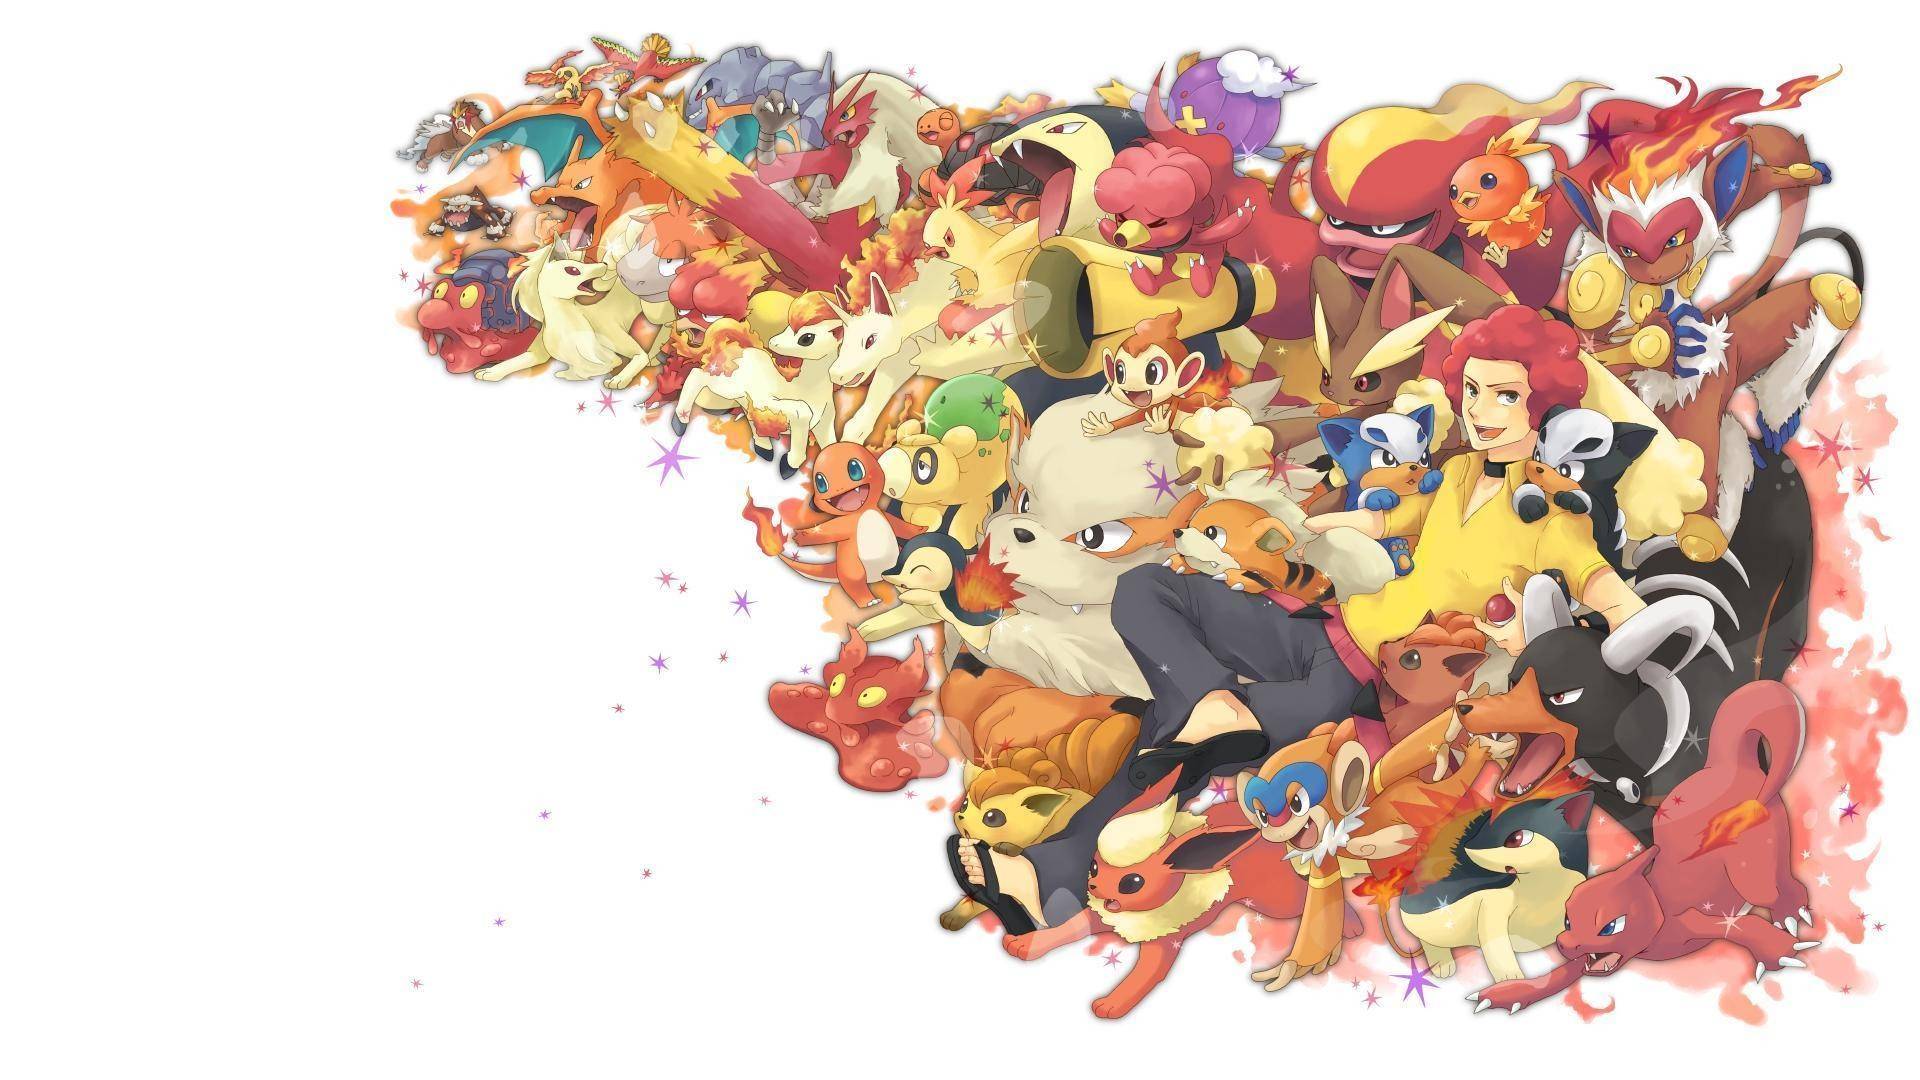 Hình nền Pokemon HD là một bức tranh tuyệt đẹp với chất lượng hình ảnh tuyệt vời và đầy màu sắc sặc sỡ. Những nhân vật Pokemon yêu thích của bạn sẽ được hiển thị và sống động hơn bao giờ hết trên màn hình của bạn. Hãy xem ngay để trải nghiệm cảm giác thú vị và hào hứng mà hình nền Pokemon HD mang lại.